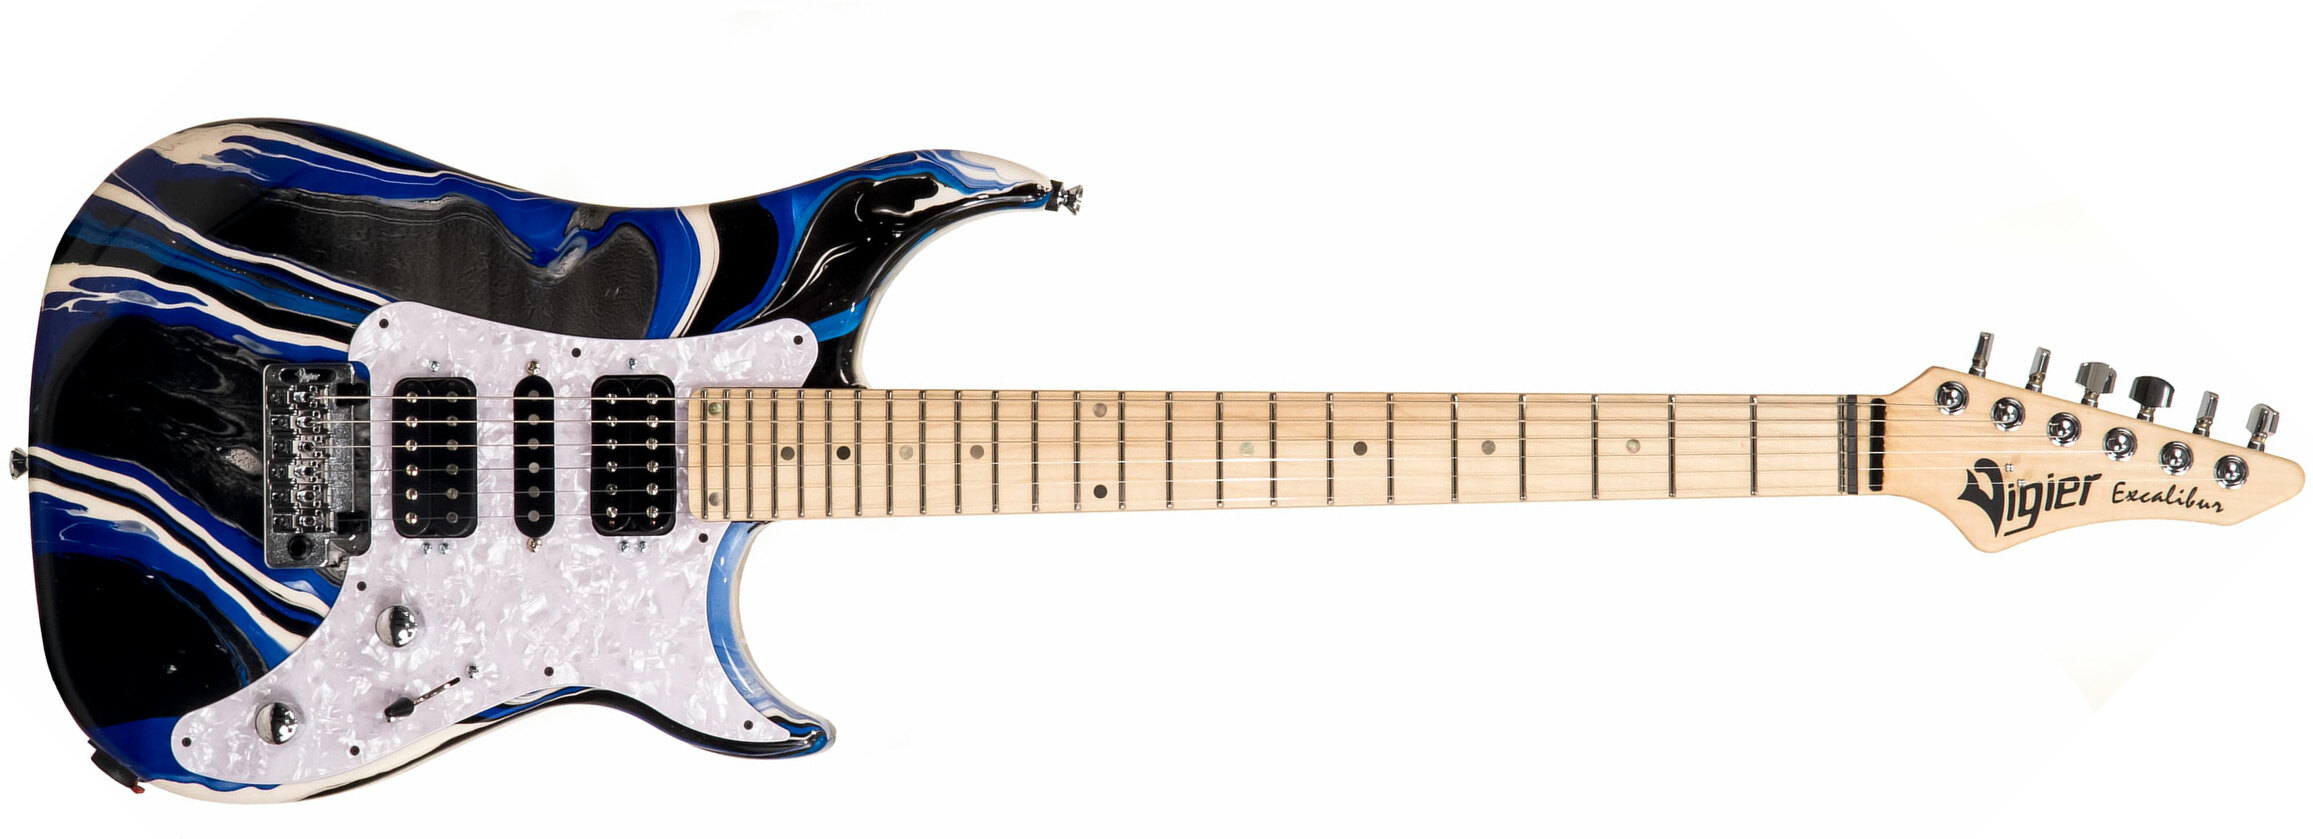 Vigier Excalibur Supraa Hsh Trem Mn - Rock Art Blue White Black - Guitare Électrique Double Cut - Main picture